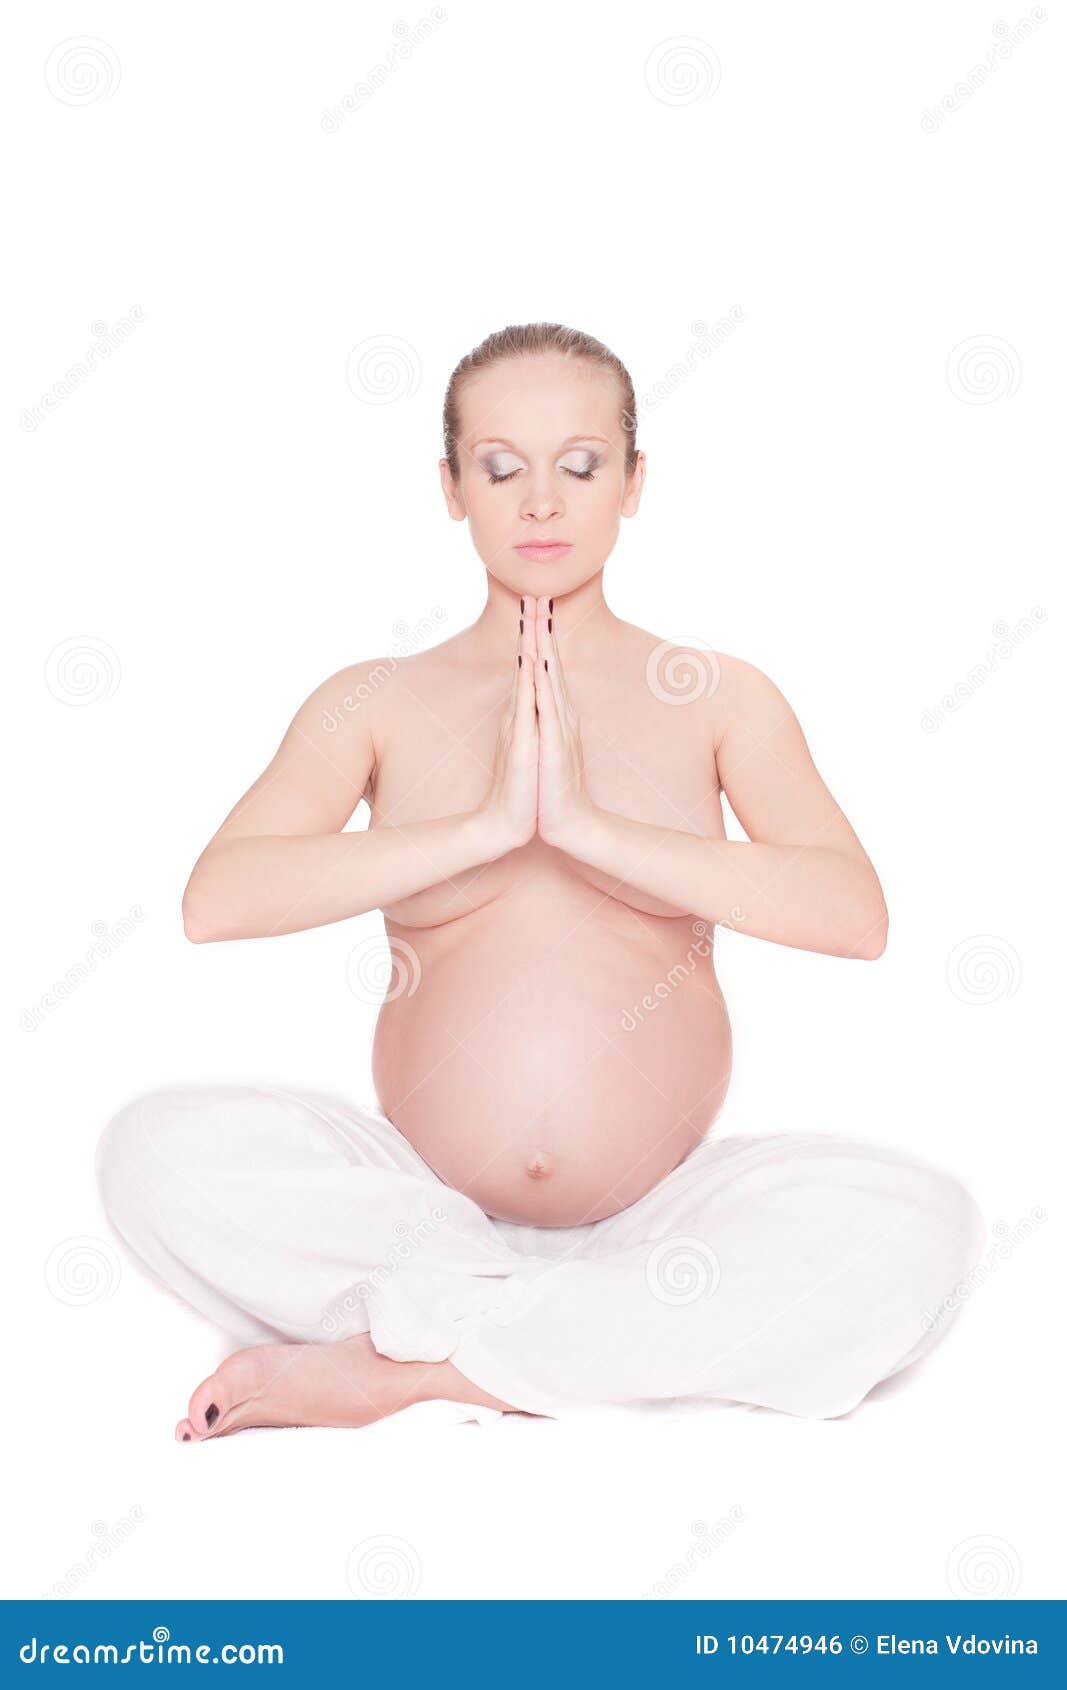 Imagenes de pechos de embarazadas